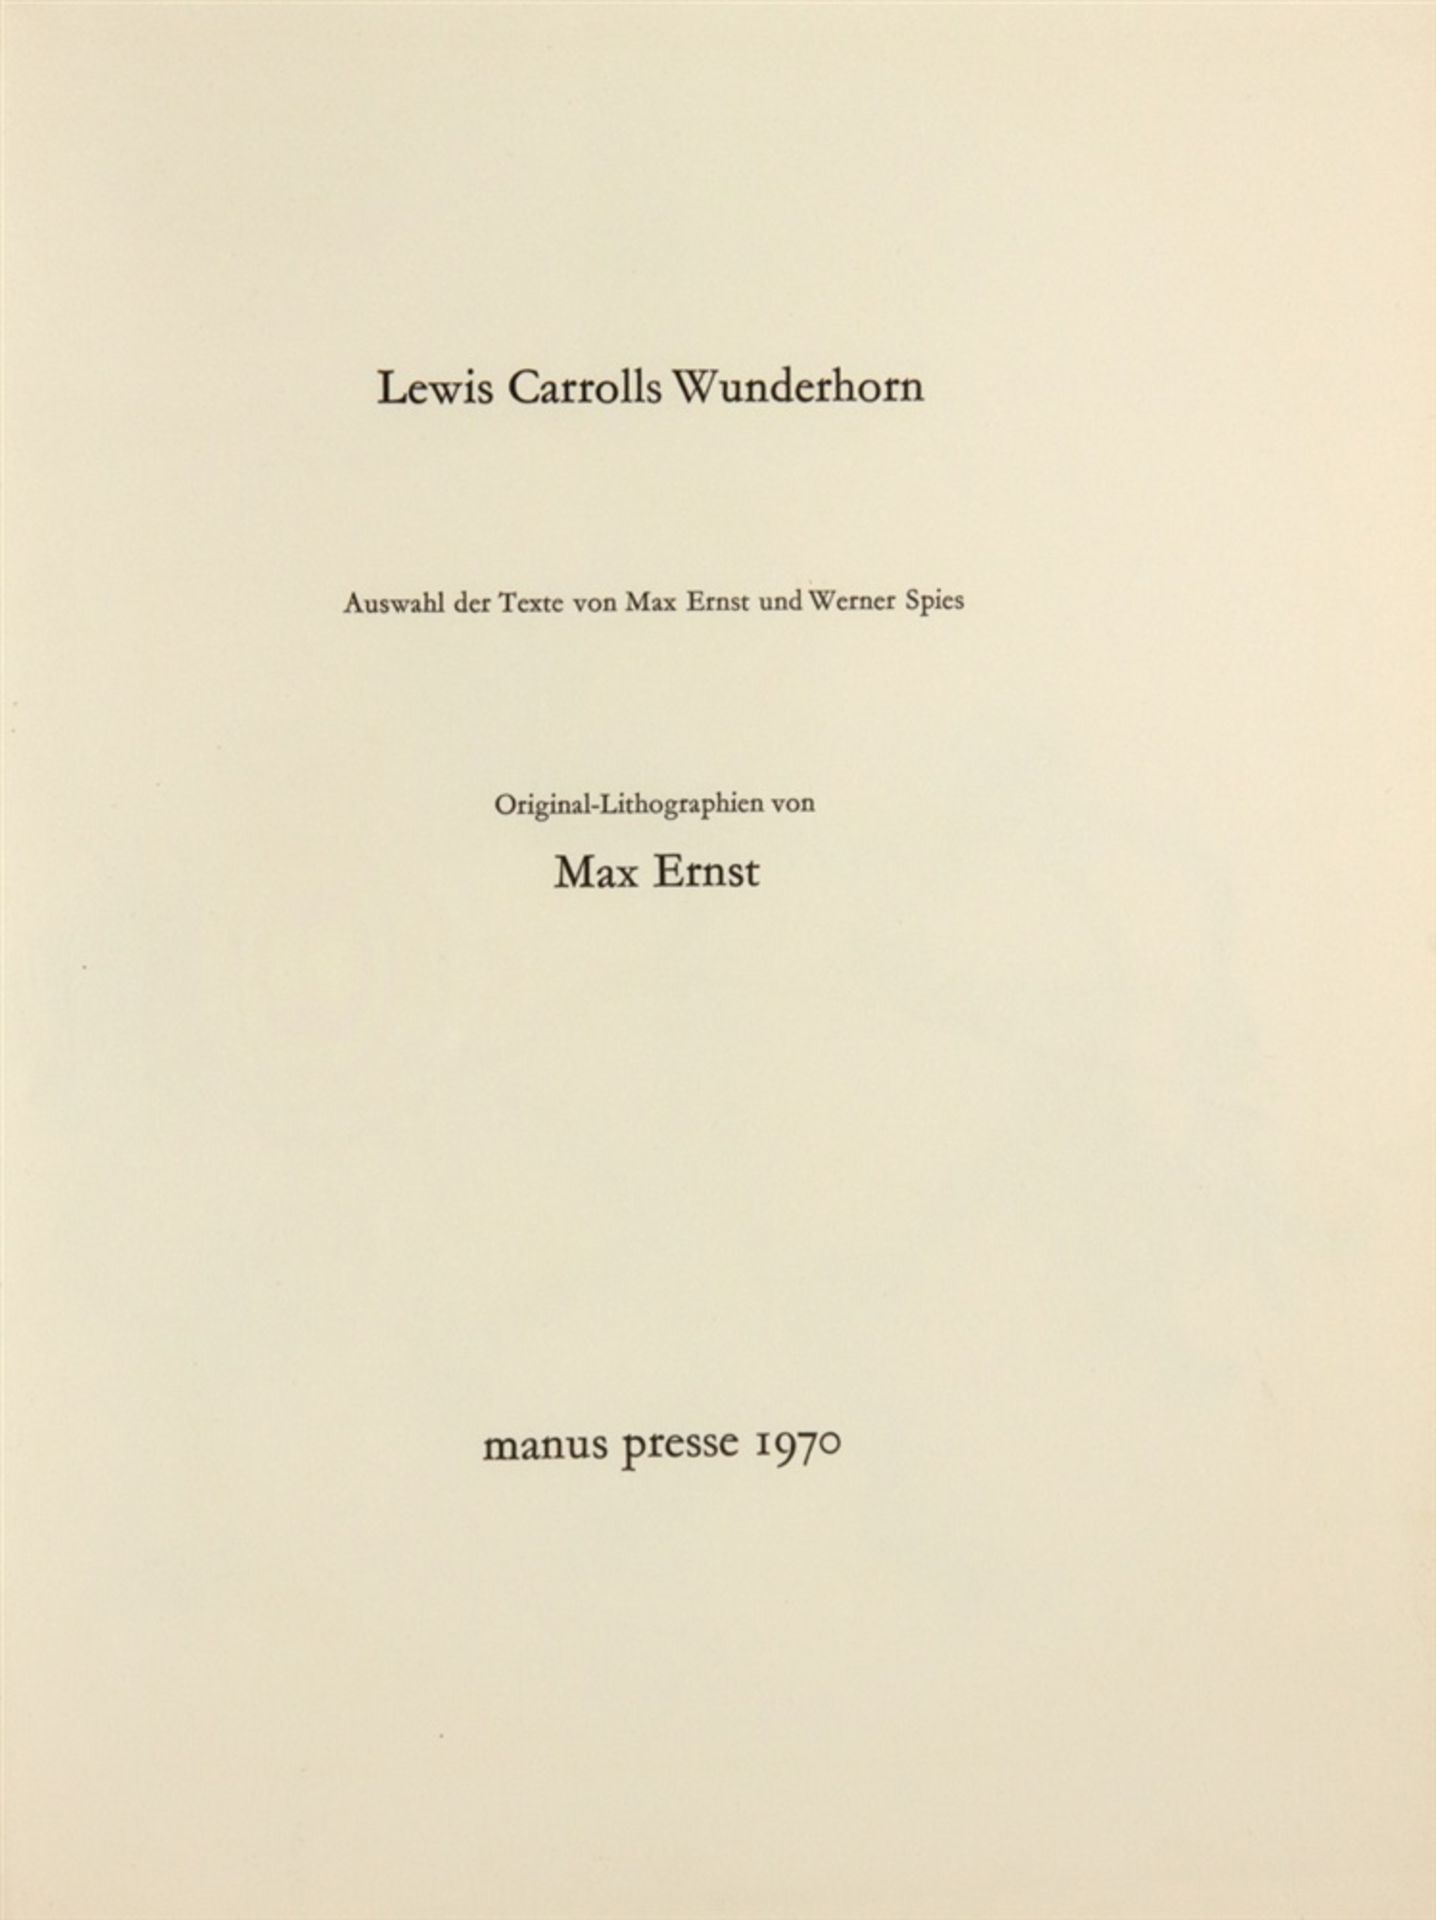 ERNST, MAXLEWIS CARROLL: Lewis Carrolls Wunderhorn. Auswahl der Texte von Max Ernst und Werner